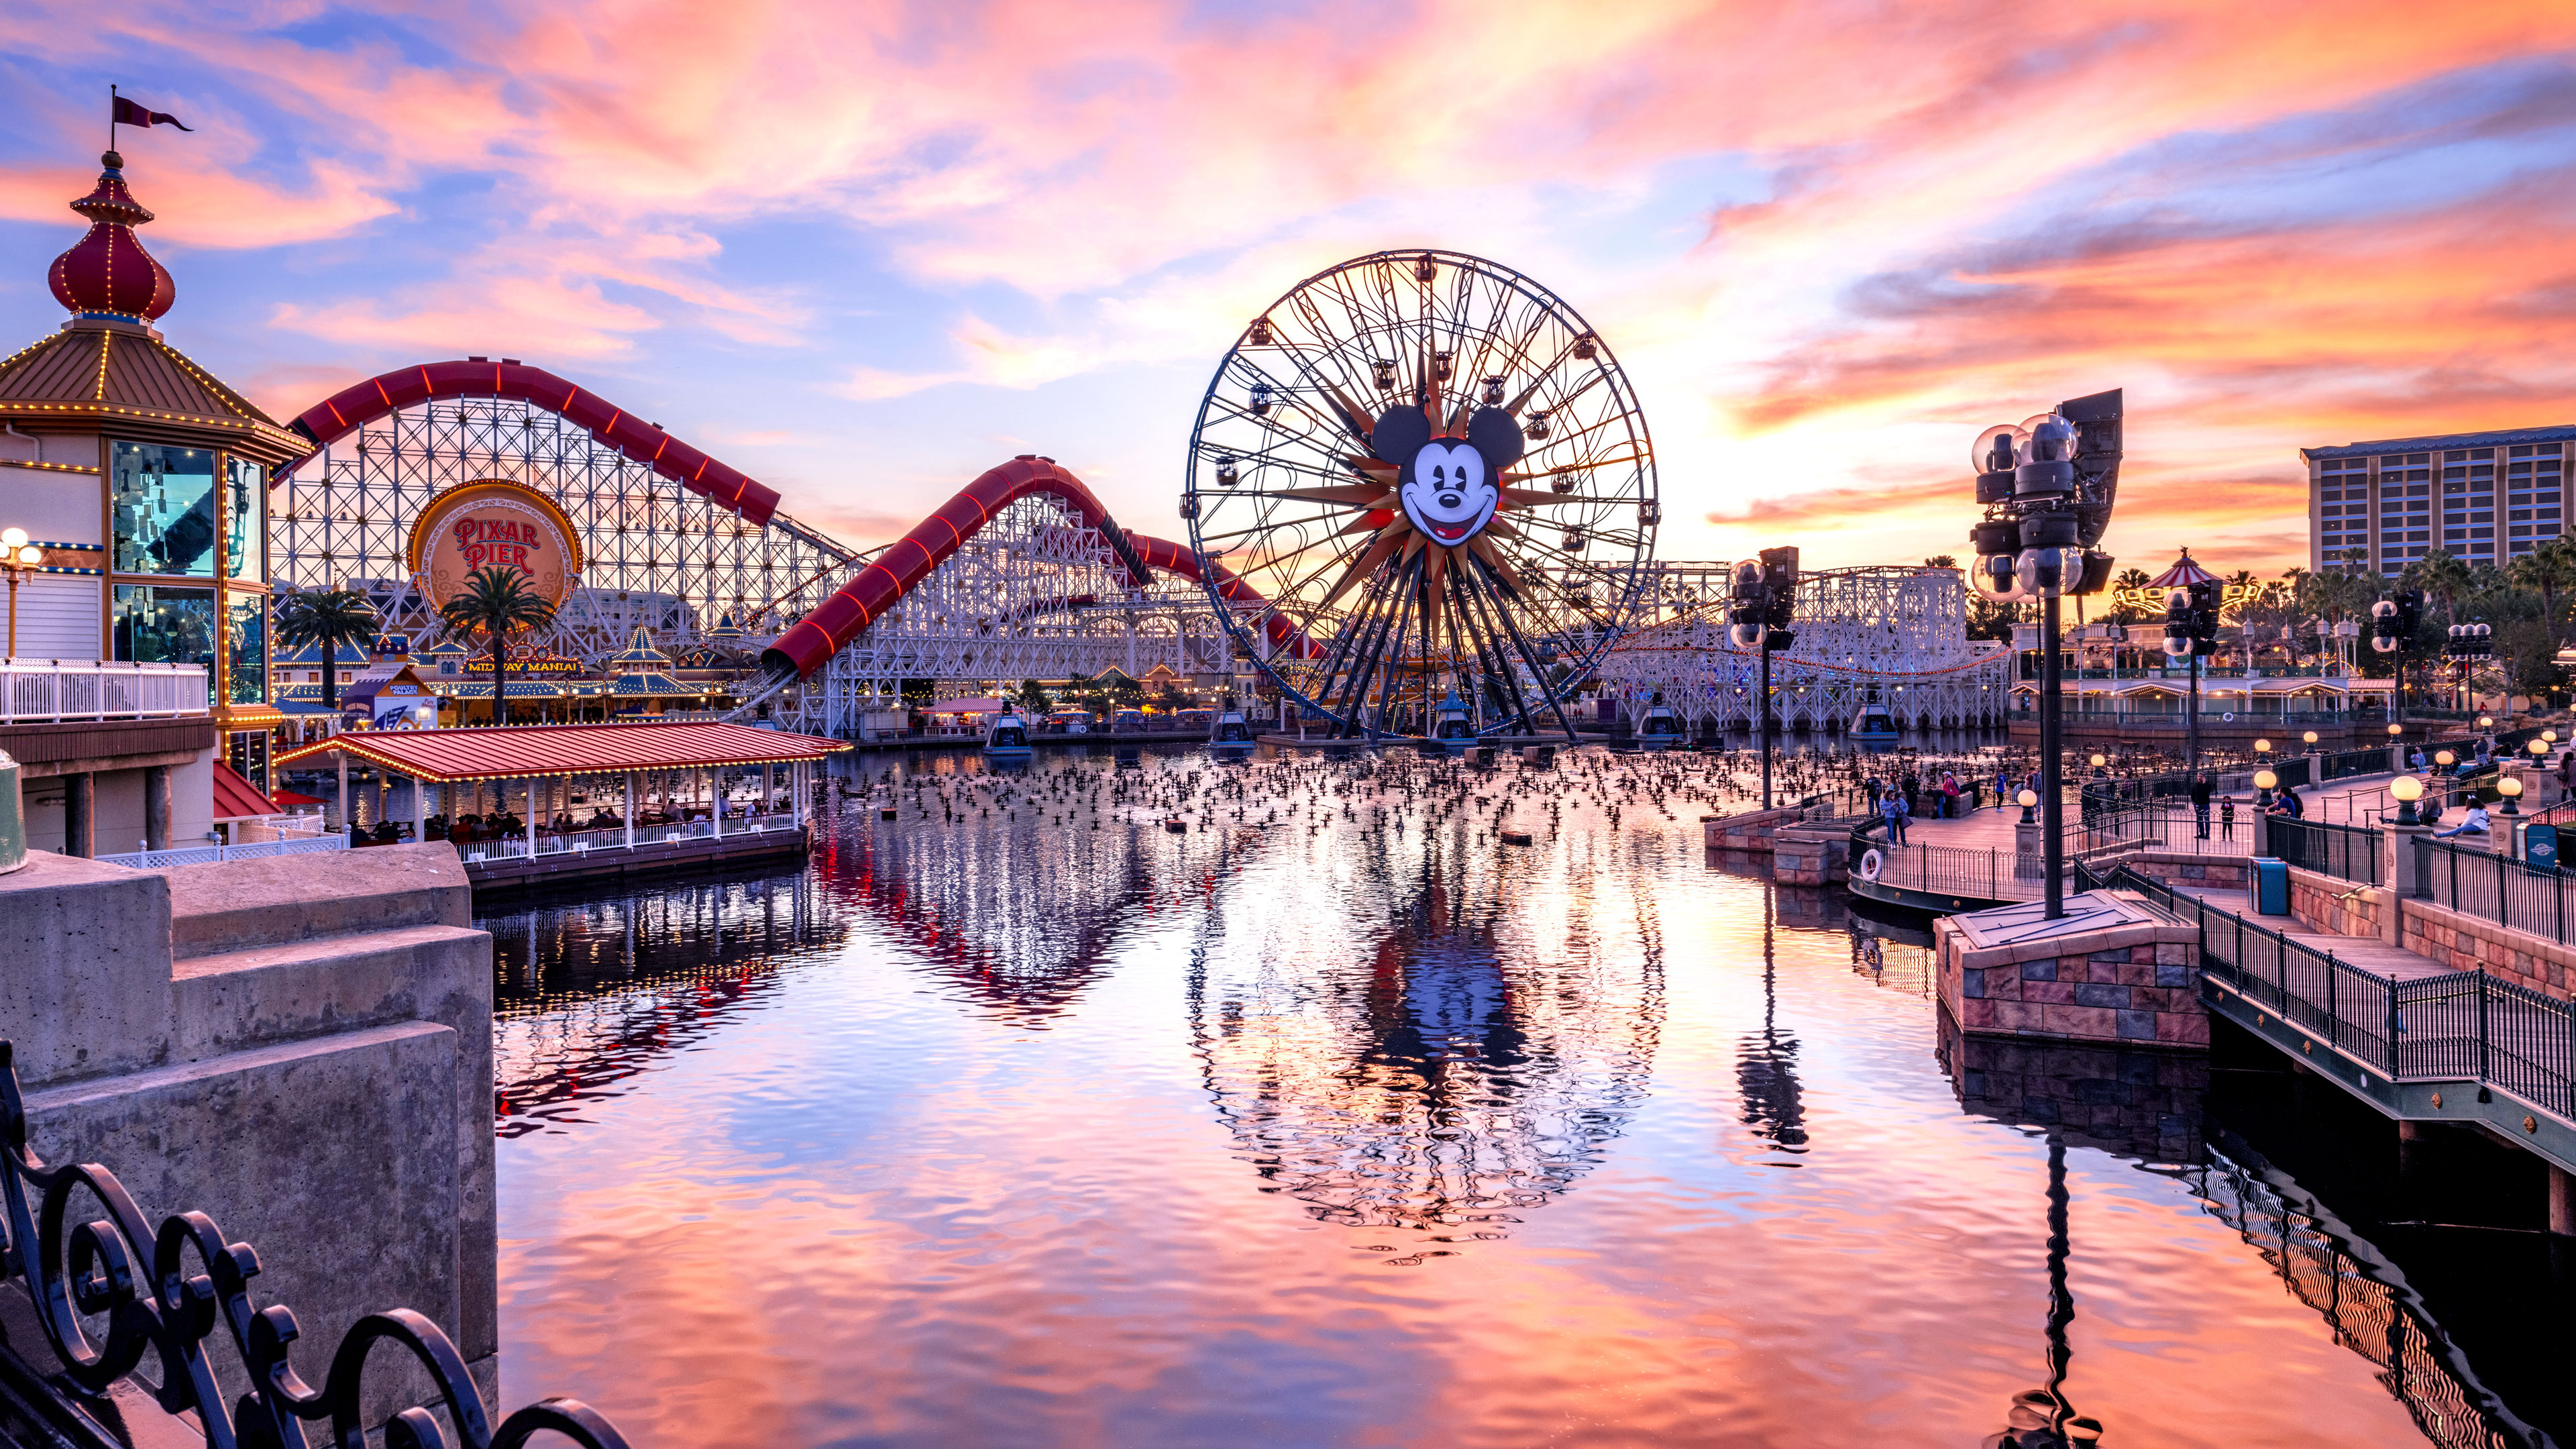 Amusement Park: Disneyland, An entertainment resort, Anaheim, California. 3840x2160 4K Wallpaper.